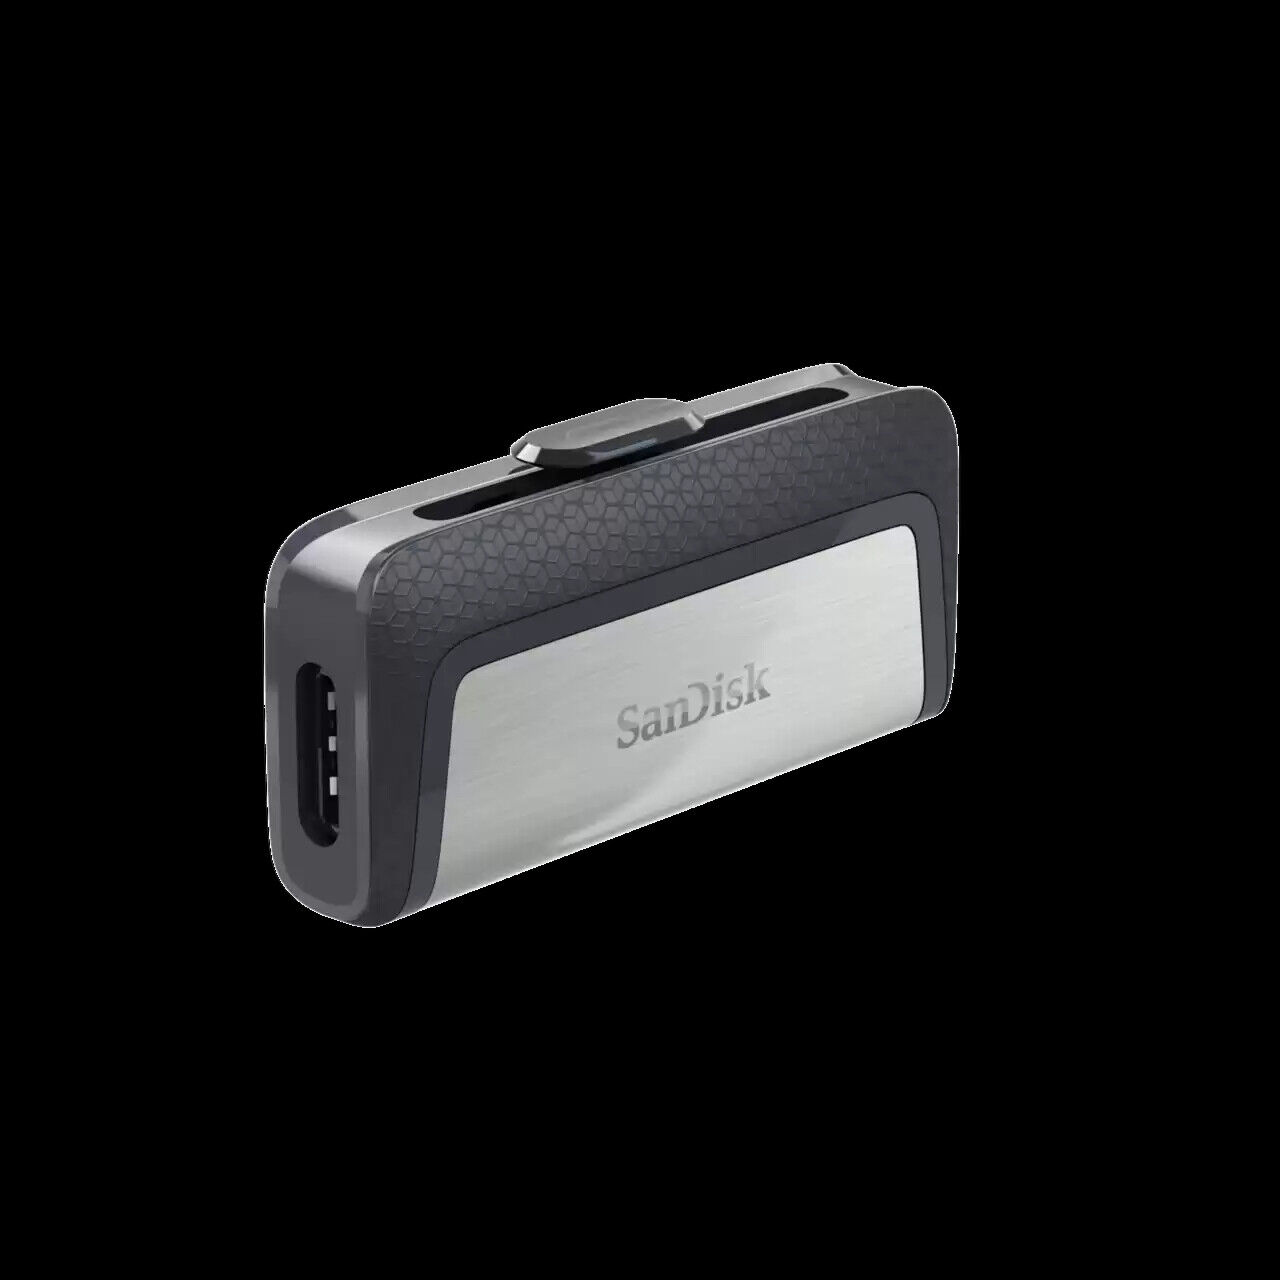 SanDisk 128GB Ultra Dual Drive USB Type-C, USB 3.1 Flash Drive - SDDDC2-032G-G46